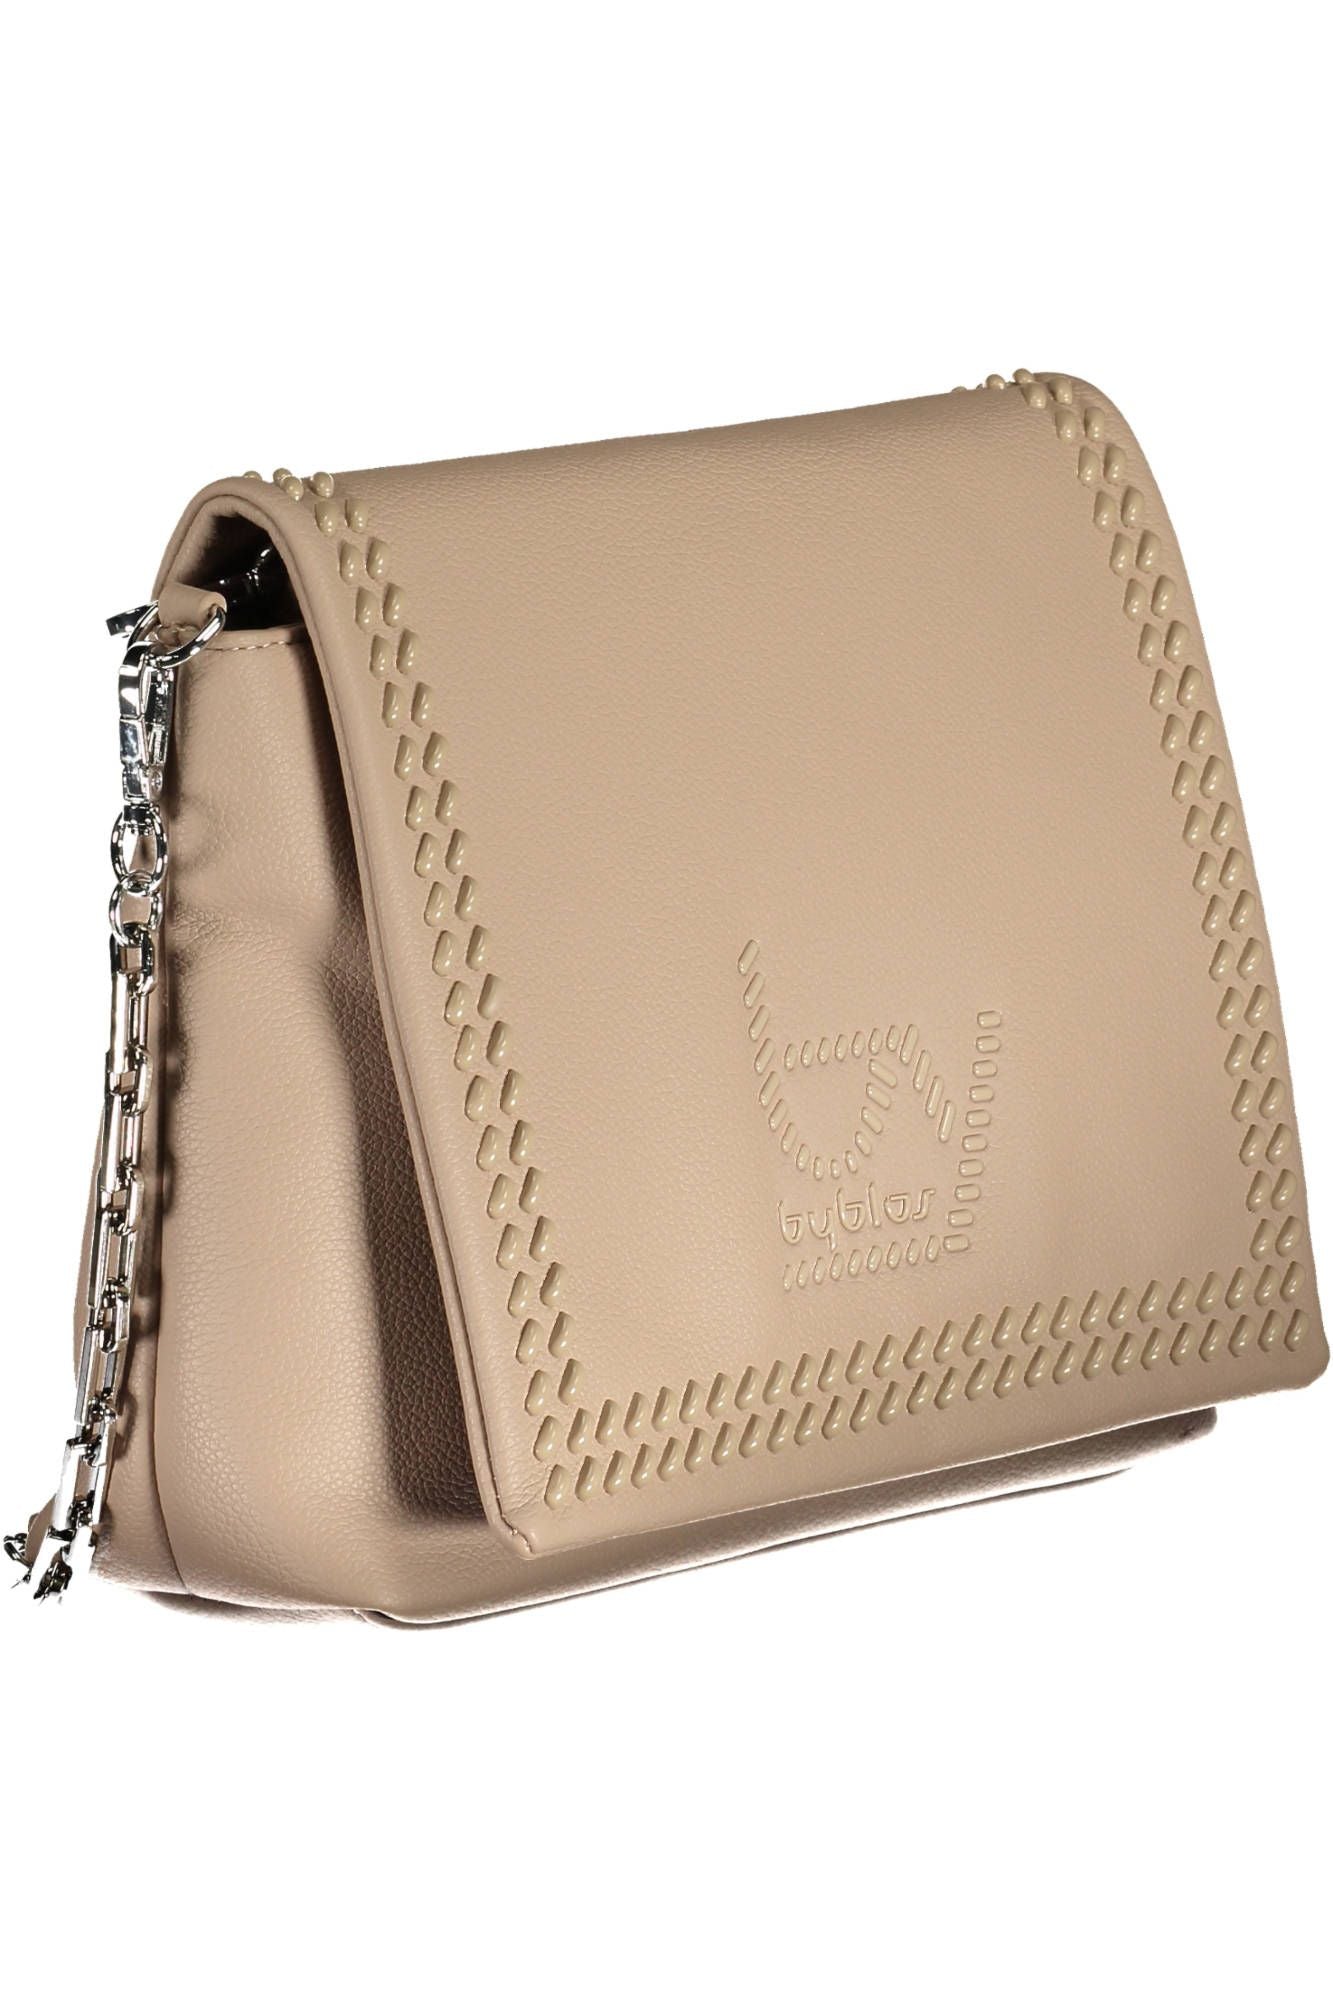 Byblos Beige Chain-Handle Shoulder Bag with Contrasting Details